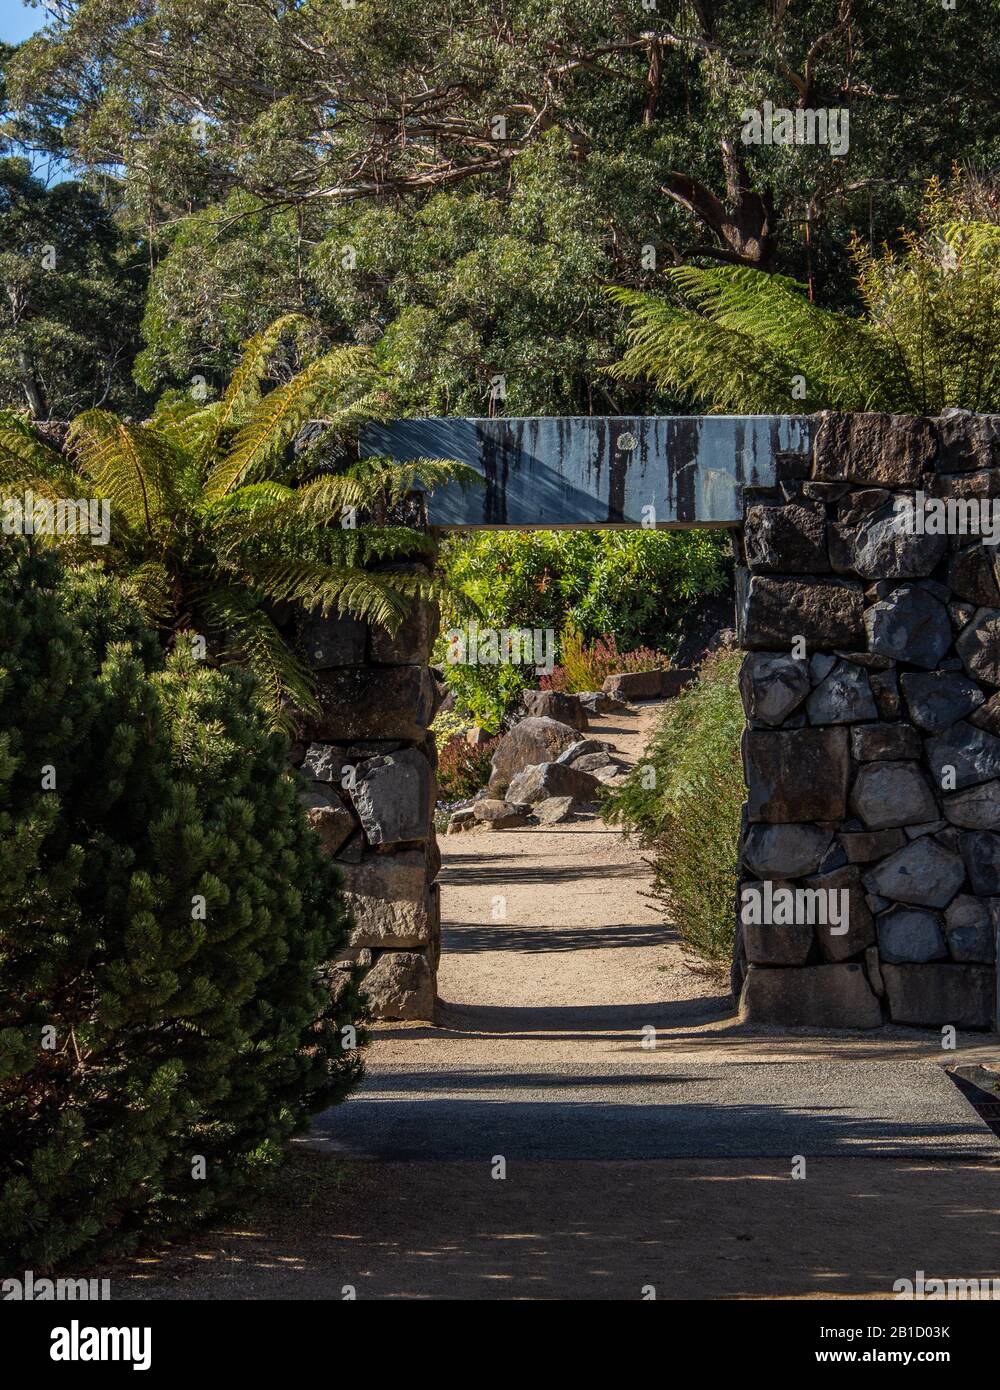 Sentiero da giardino con pareti in pietra, arco porta lungo passerella in pietra circondata da alberi Foto Stock